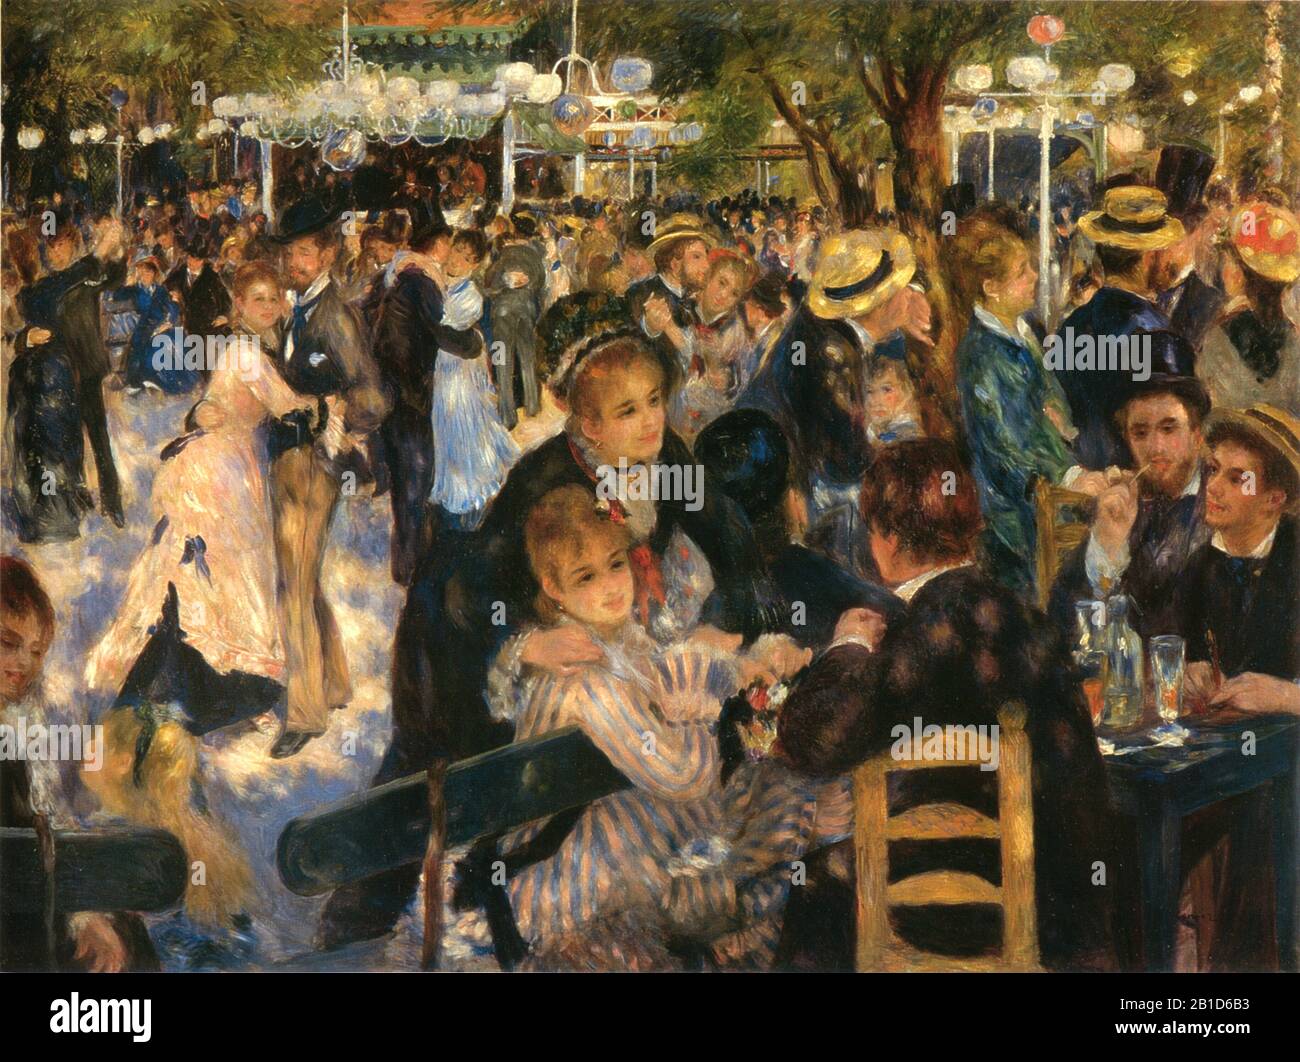 Le Moulin de la Galette (1876) - Pittura Del 19th Secolo di Pierre-Auguste Renoir - immagine Ad Altissima risoluzione e di qualità Foto Stock